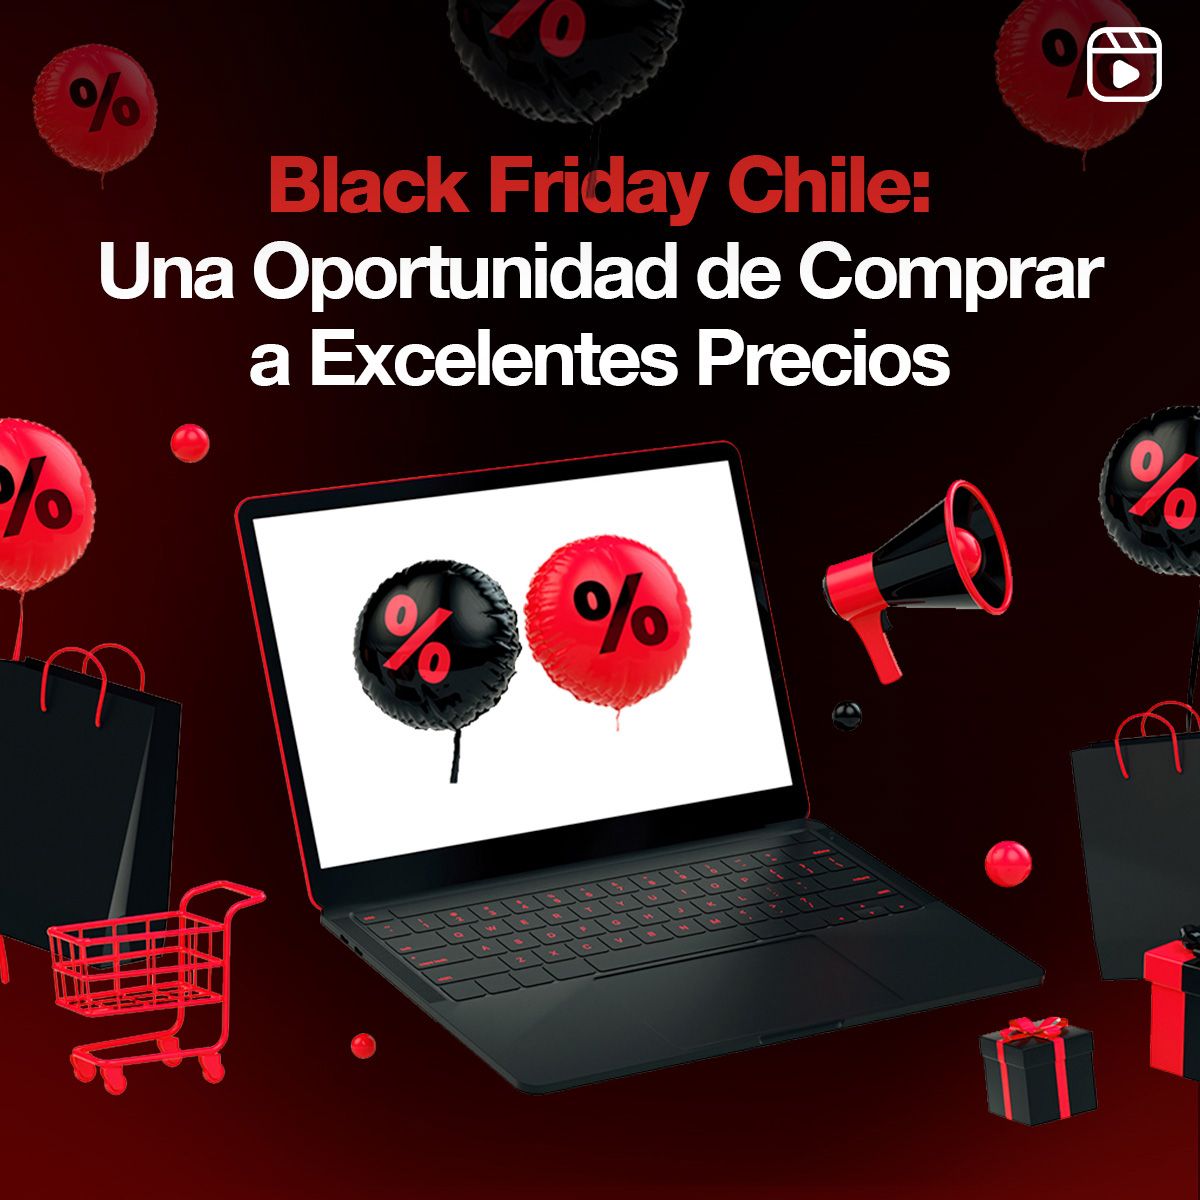 Black Friday Chile: Una Oportunidad de Comprar a Excelentes Precios